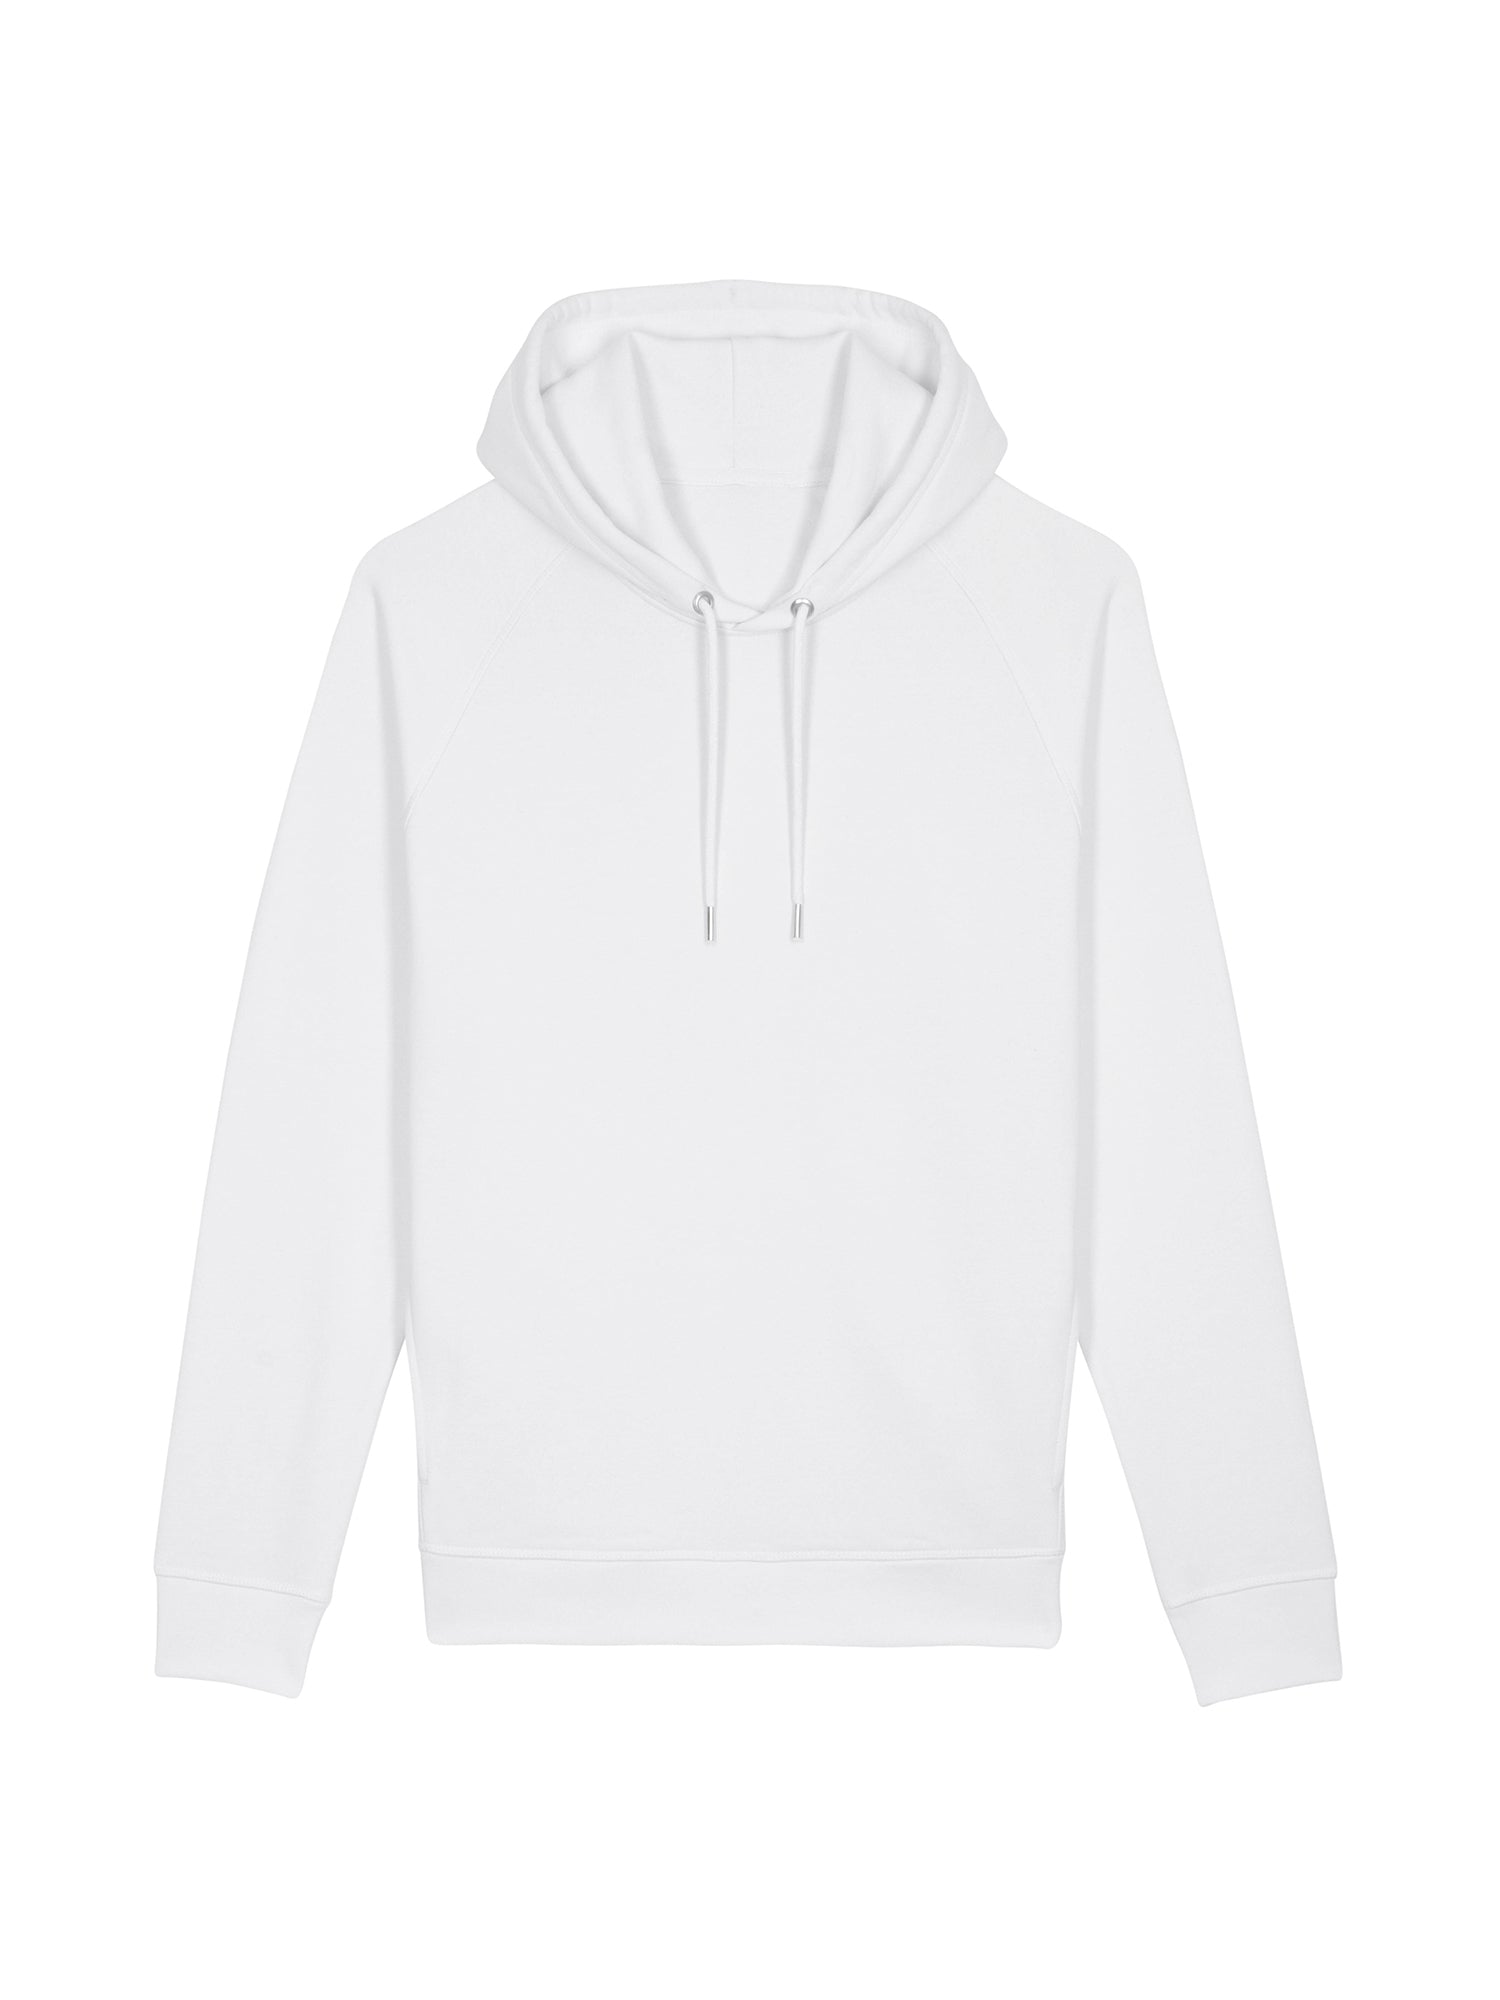 stanley stella unisex organic hoodie stsu824 portait white front flat lay